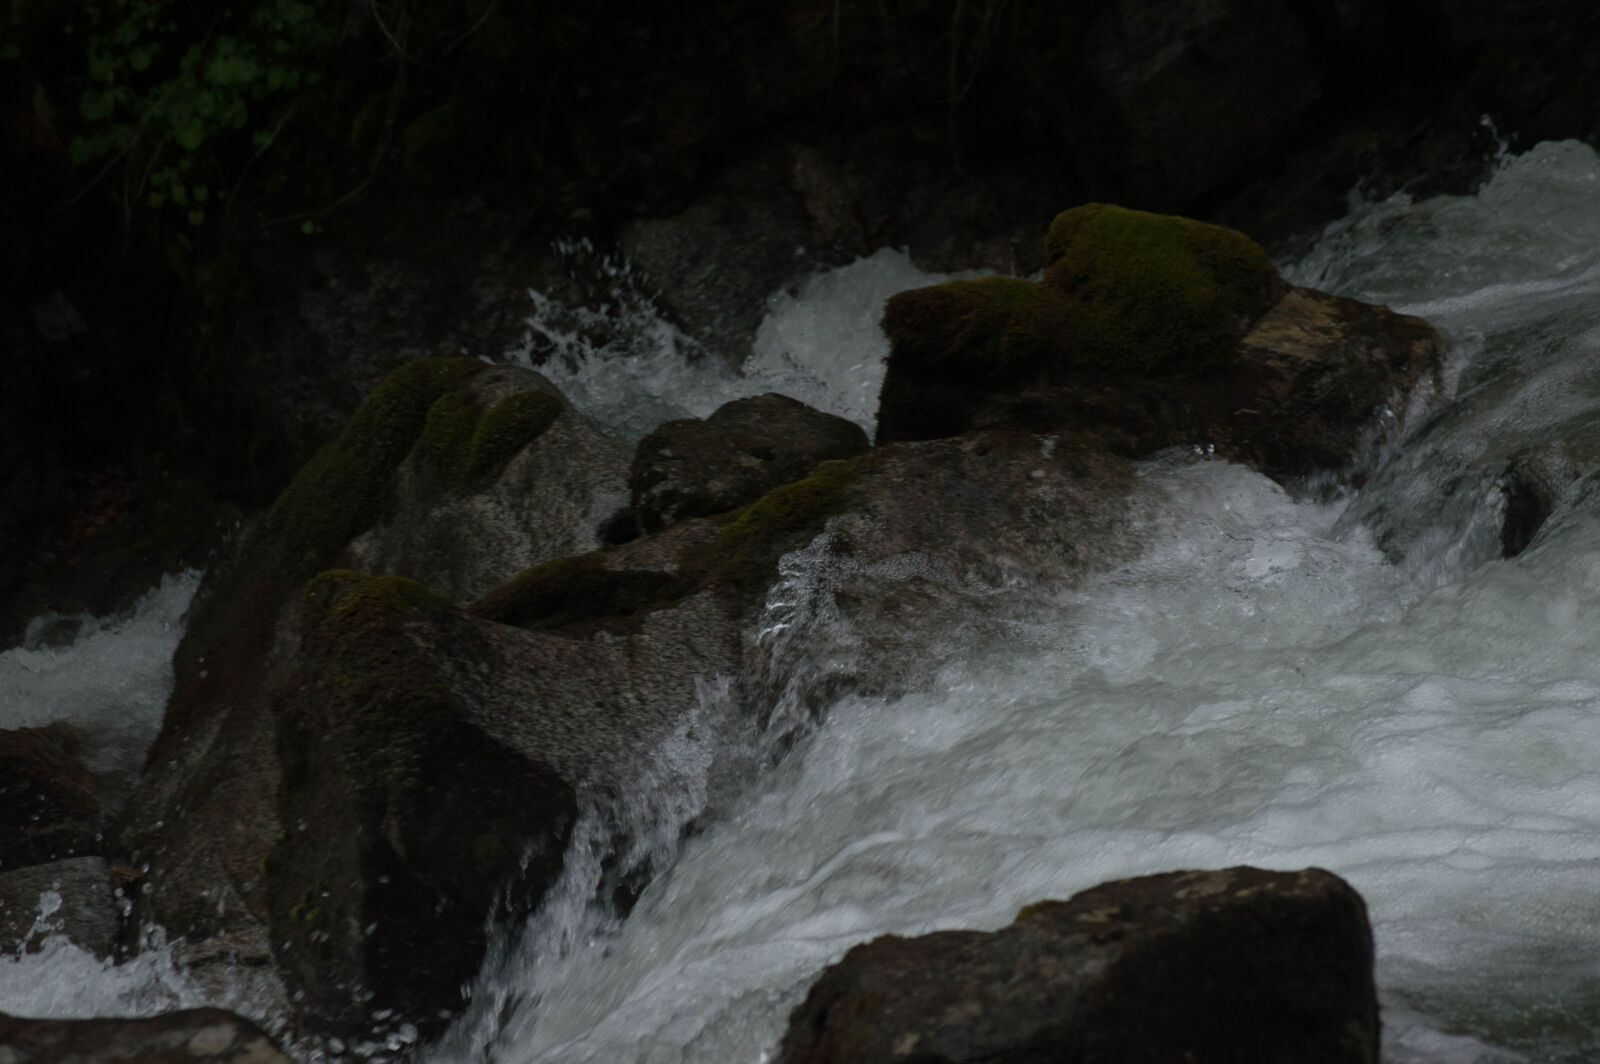 Nikon AF-S DX Nikkor 55-200mm F4-5.6G VR sample photo. Rapids, river, rocky, rushing photography